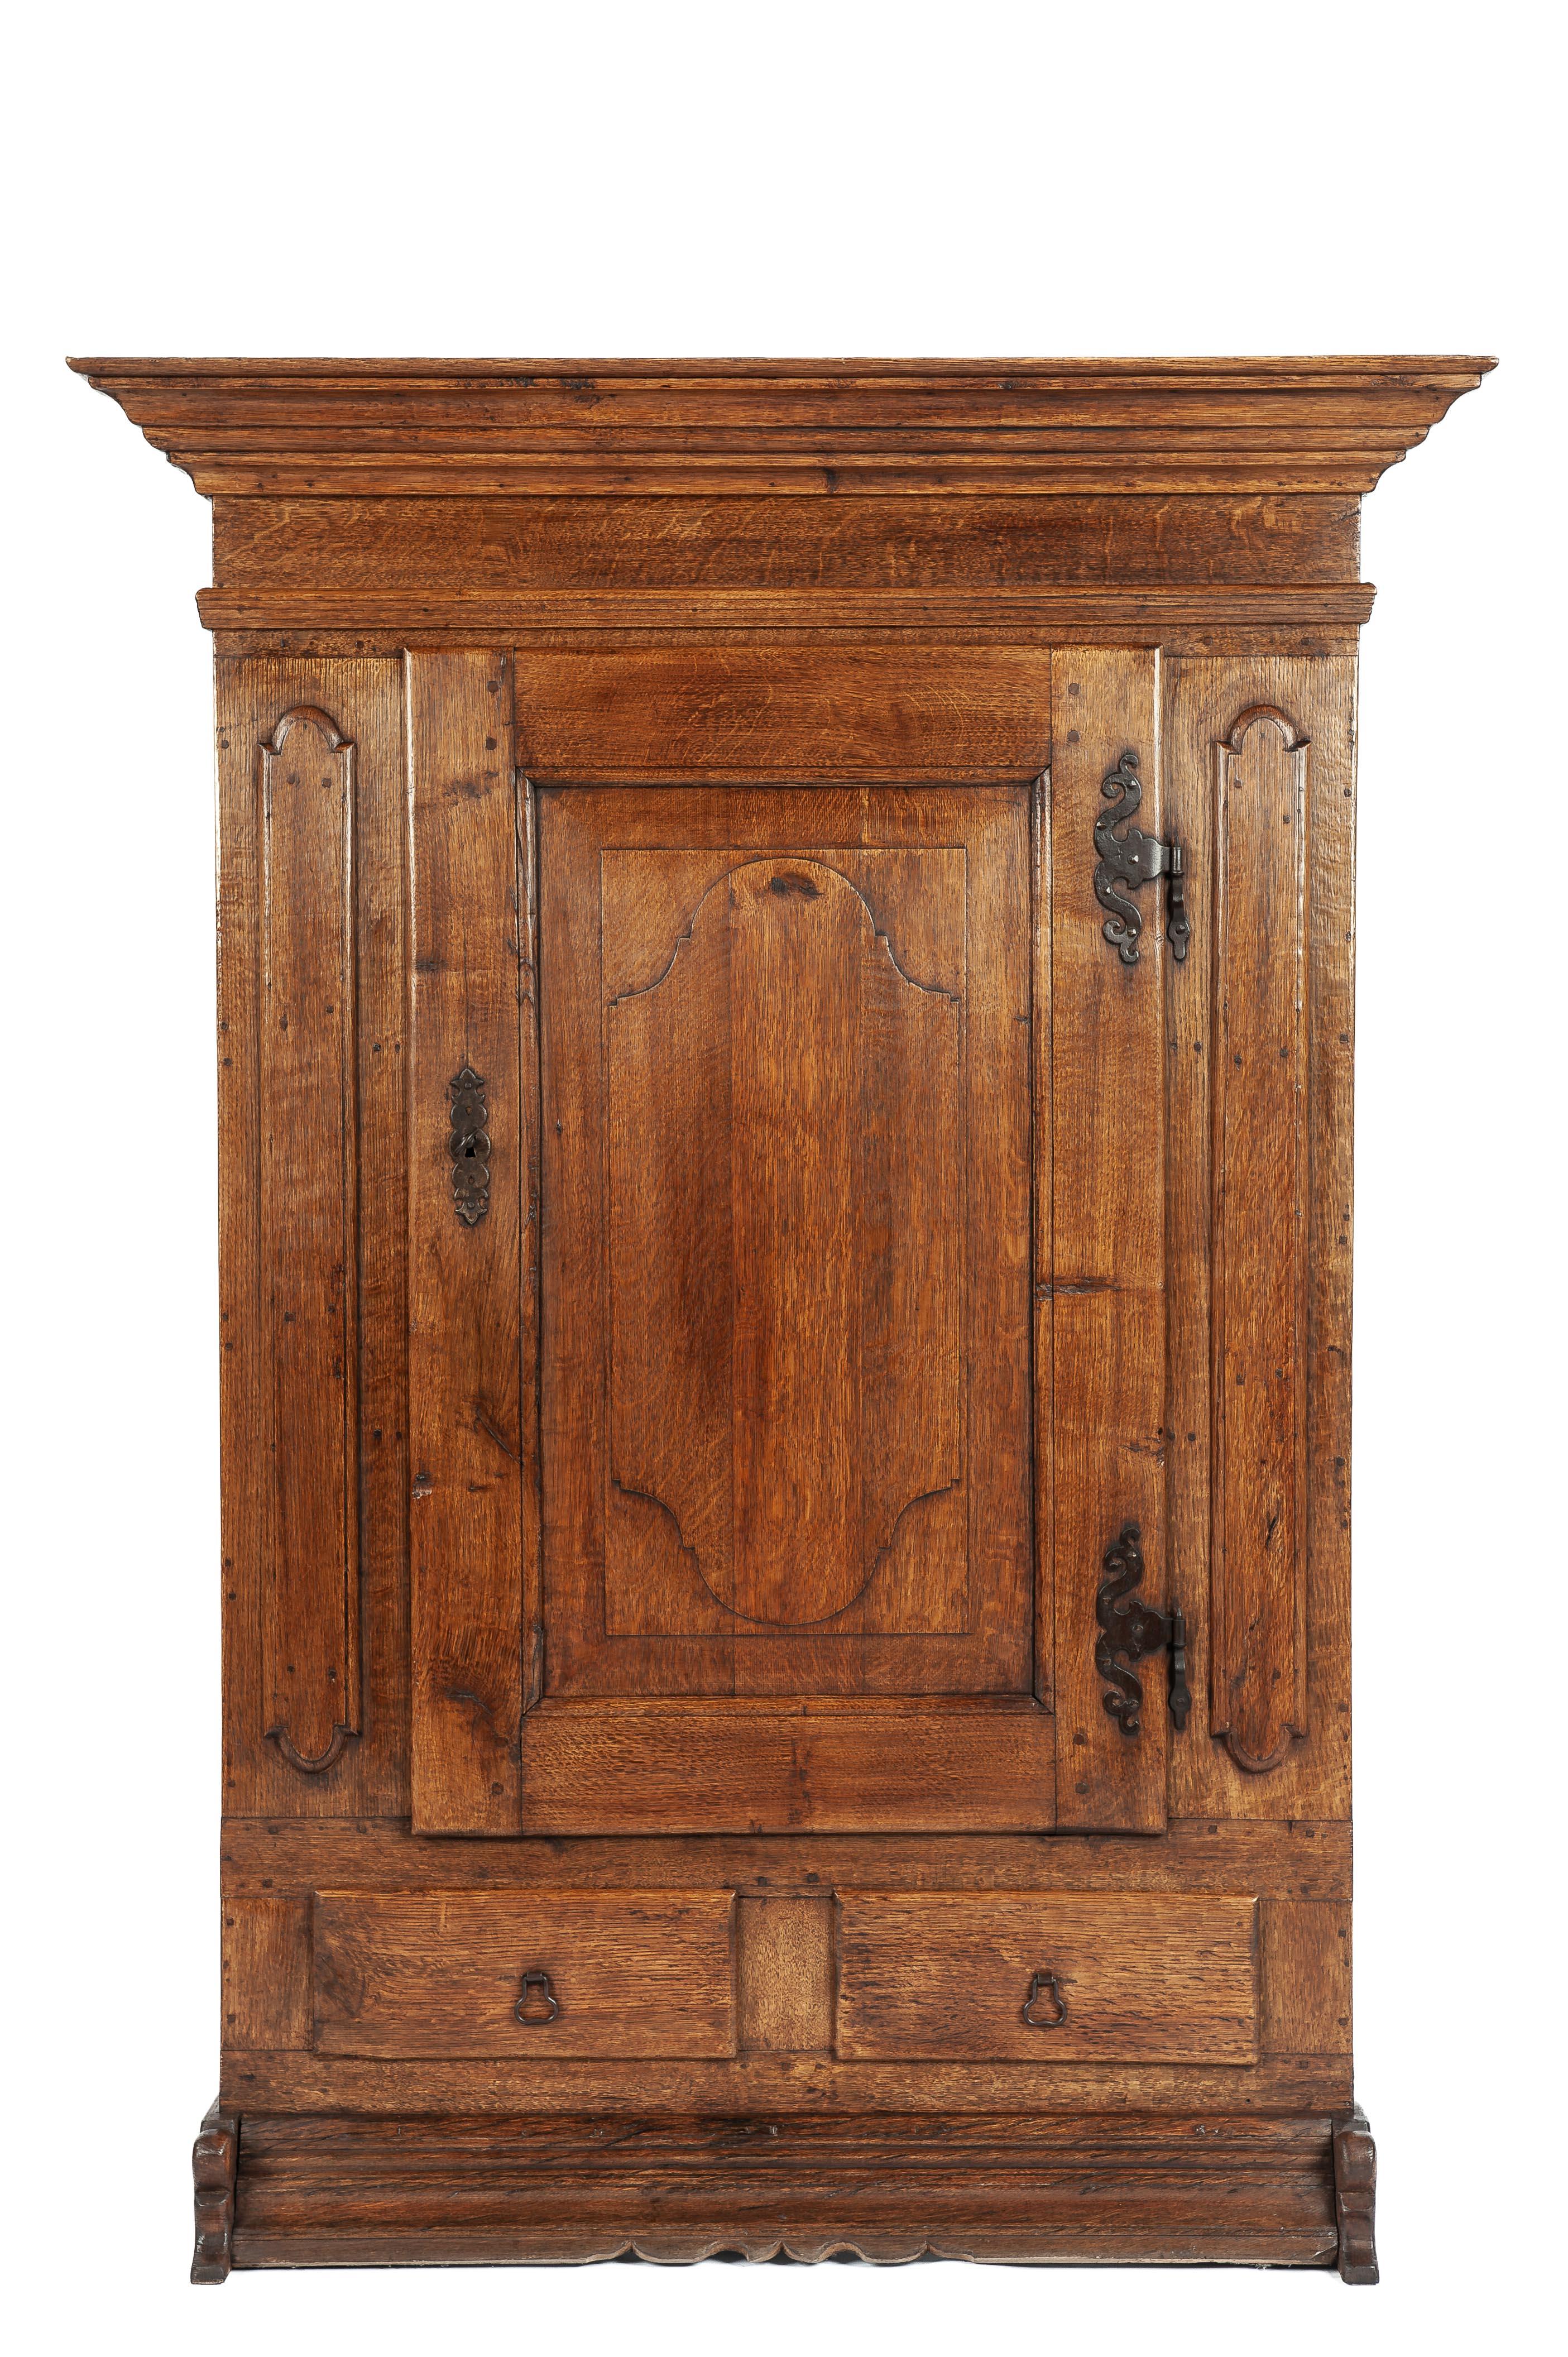 Nous vous proposons une magnifique armoire ancienne fabriquée en Allemagne vers 1900. Ce meuble est entièrement construit en bois de chêne massif et comporte une seule porte avec deux tiroirs en dessous. La porte est ornée d'un magnifique panneau en